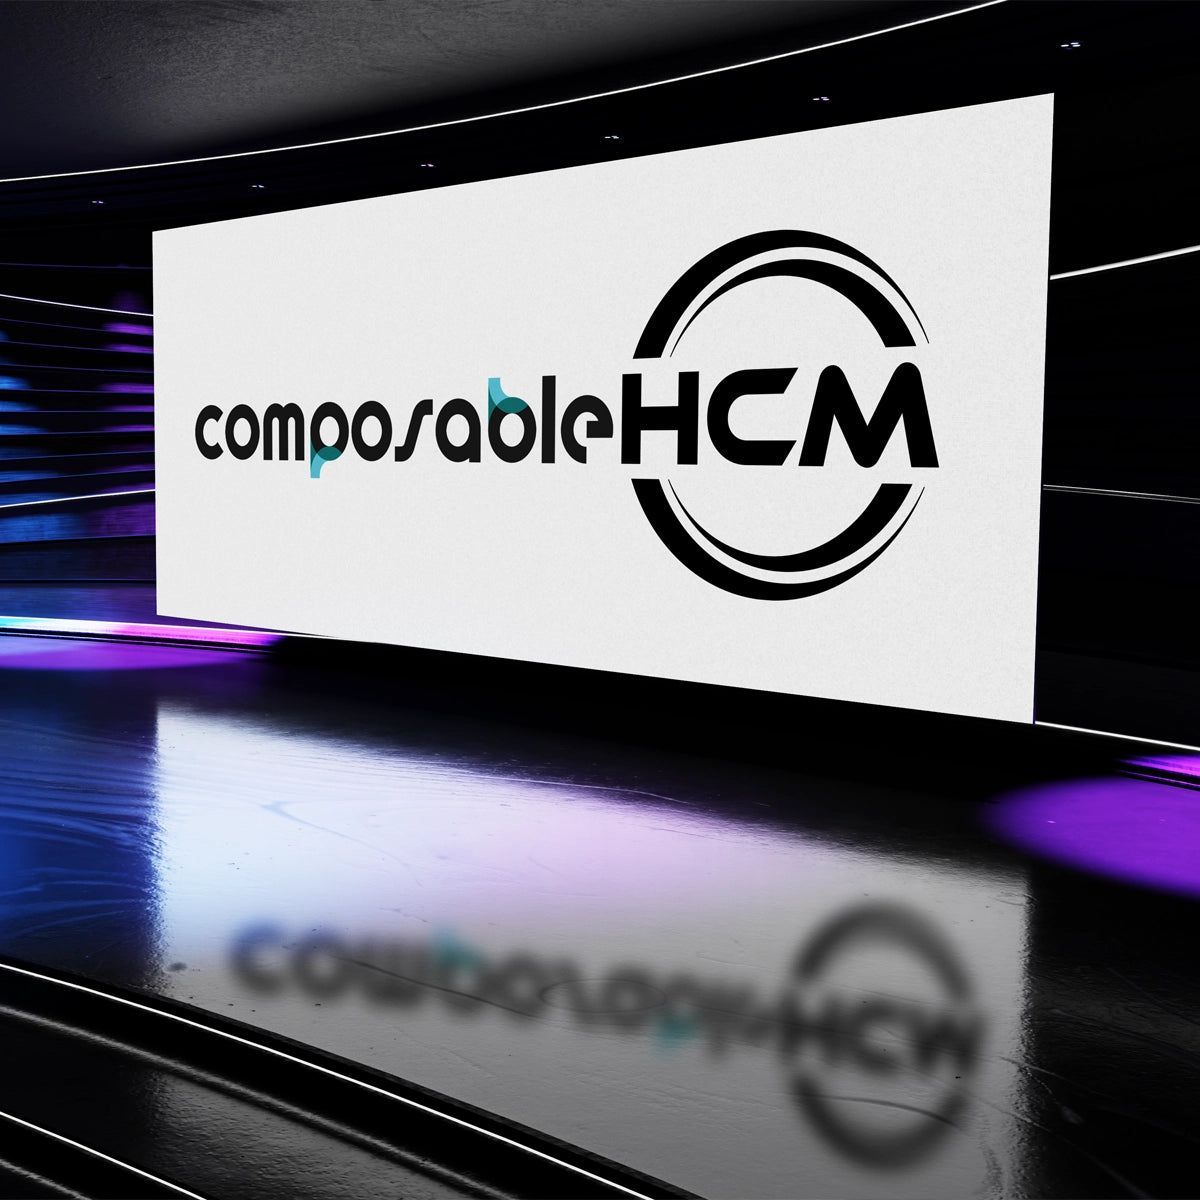 ComposableHCM.com